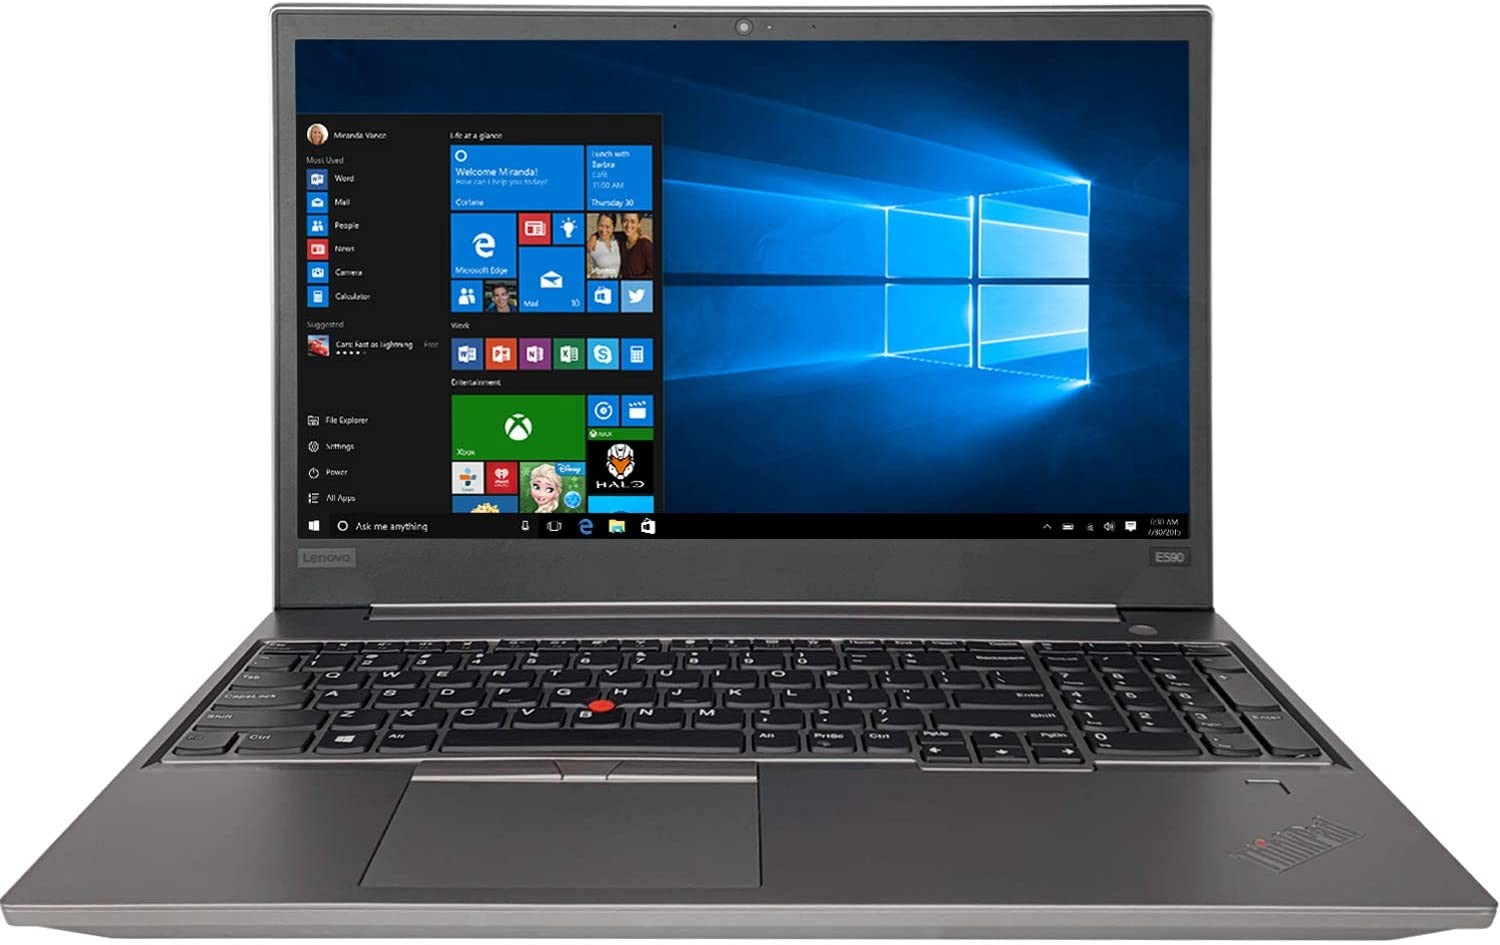 Lenovo ThinkPad E590 15.6" FHD i5-8265U 1.6GHz 8GB 500GB W10H Laptop 20NB004GUS